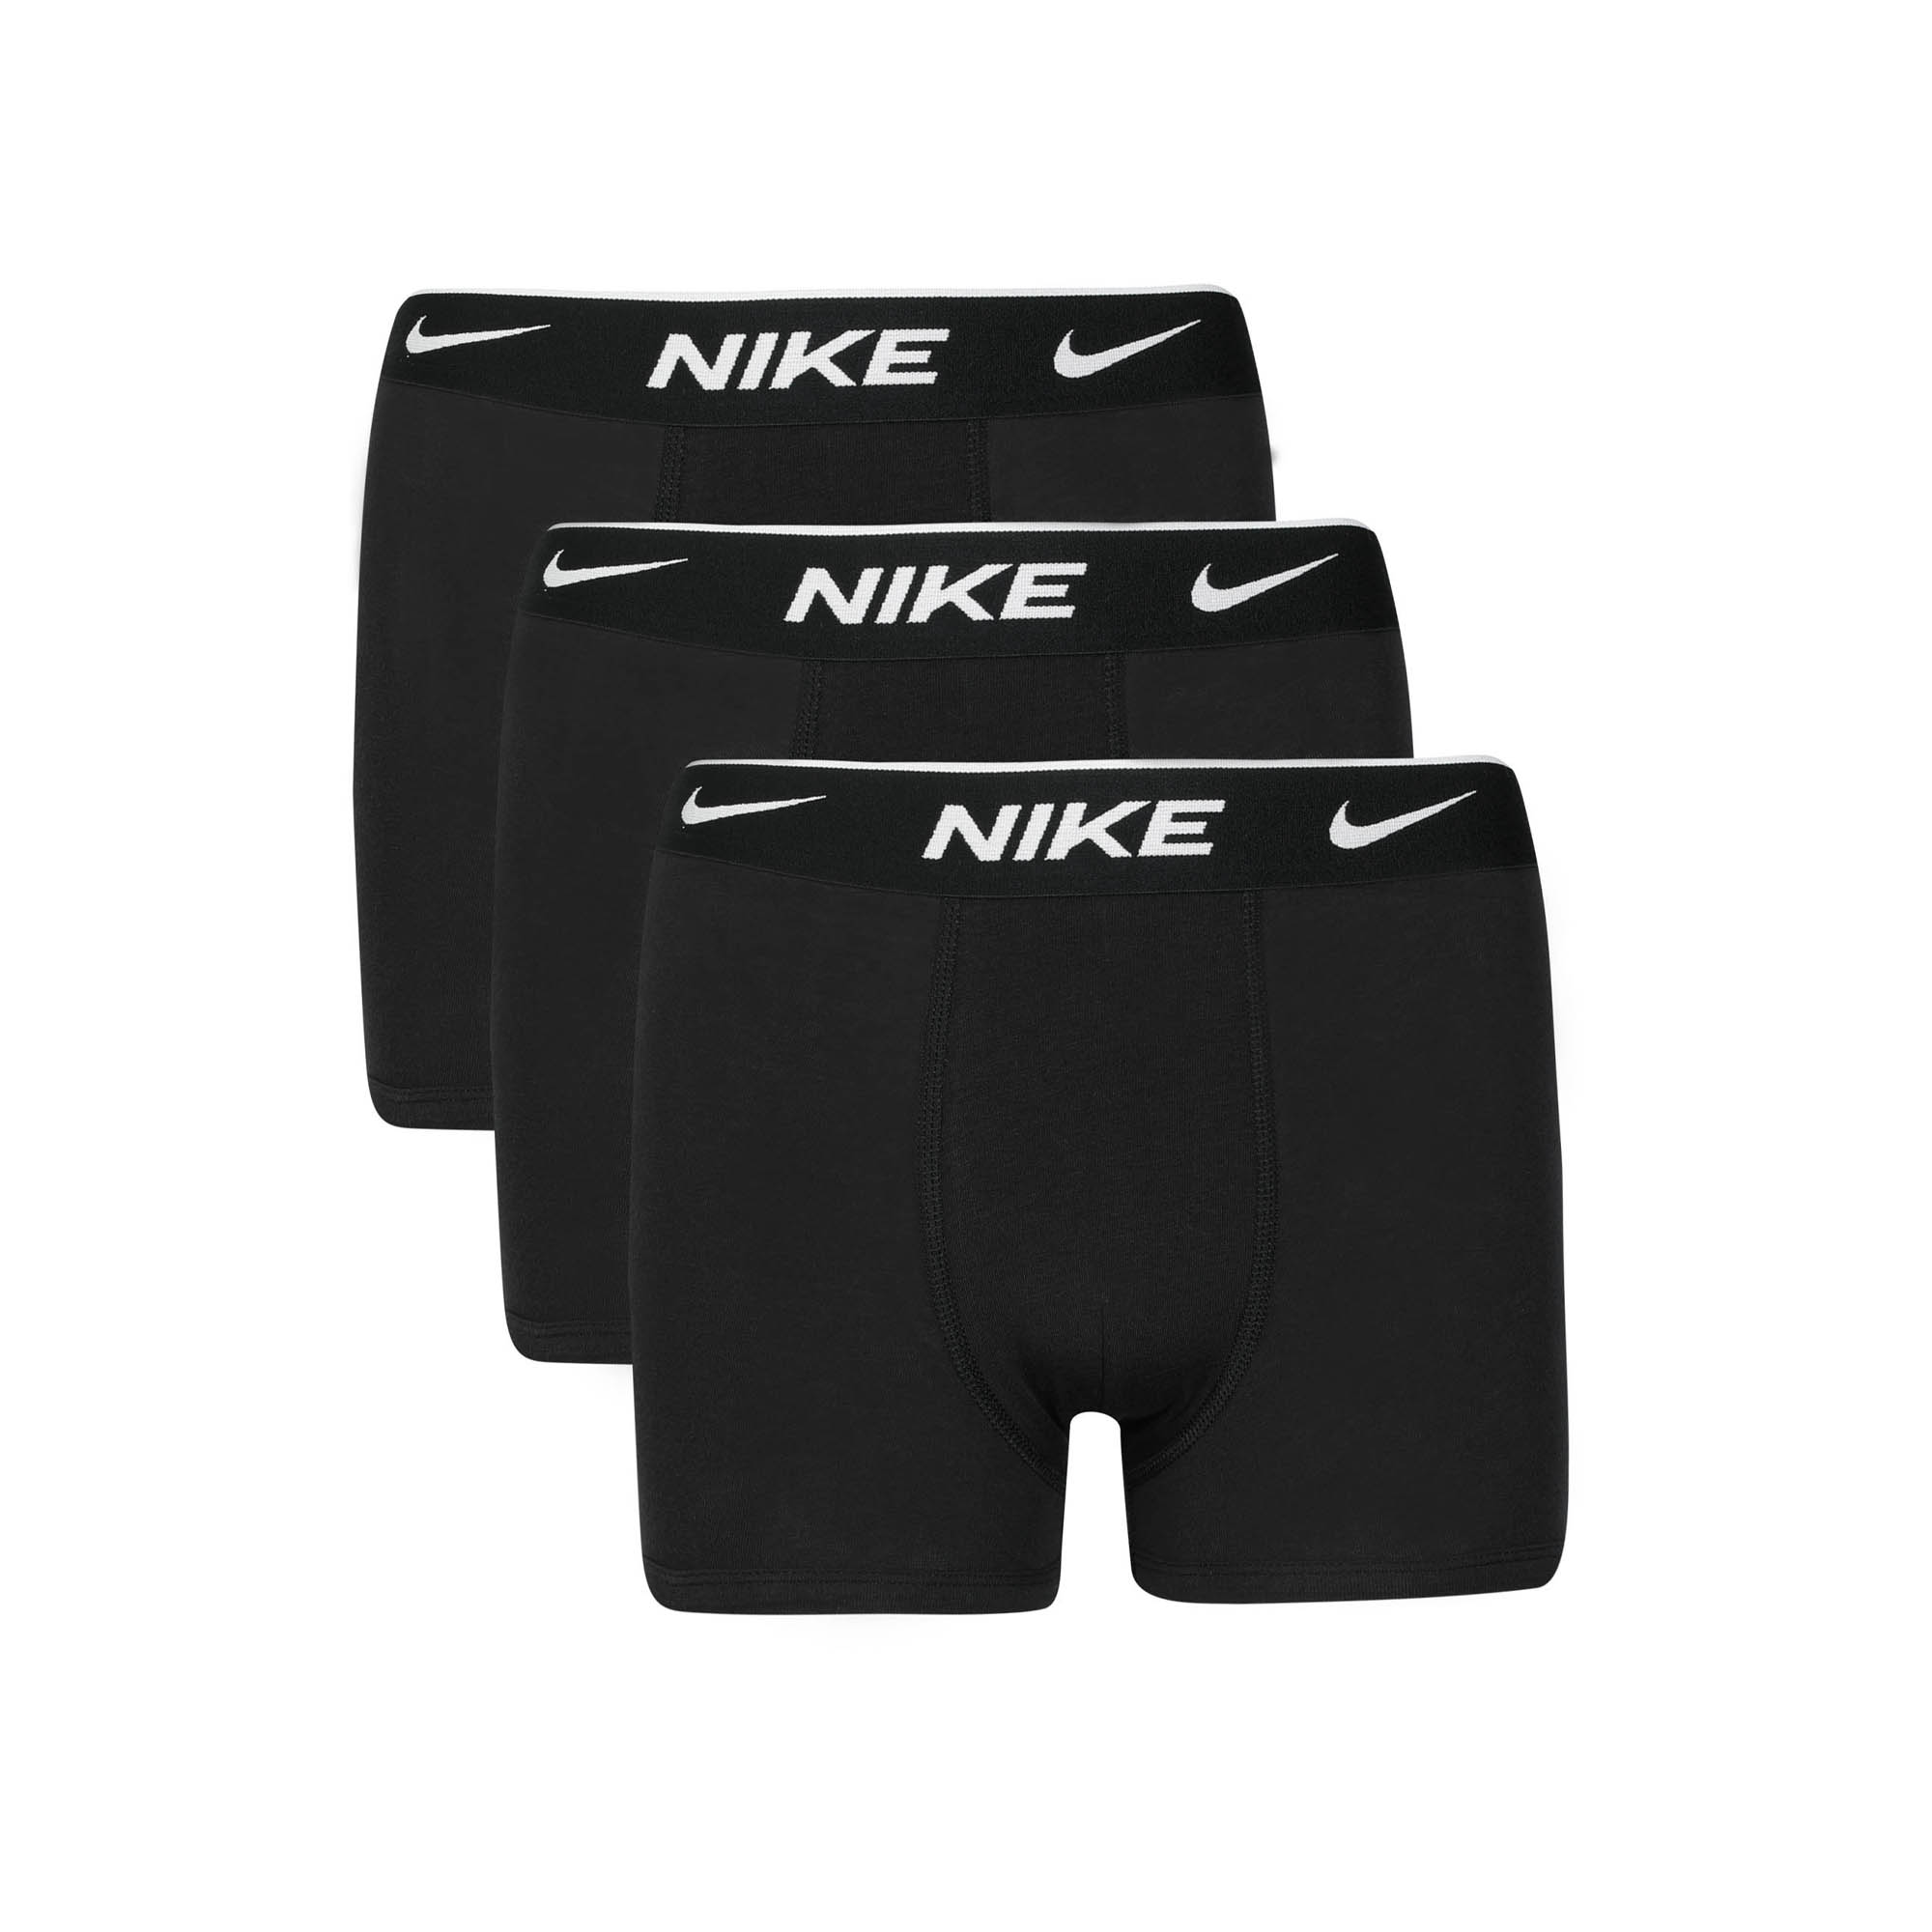 Подростковые трусы Nike Day Cotton Stretch Dri-FIT 9N0846-023 купить в  Москве с доставкой: цена, фото, описание - интернет-магазин Street-beat.ru